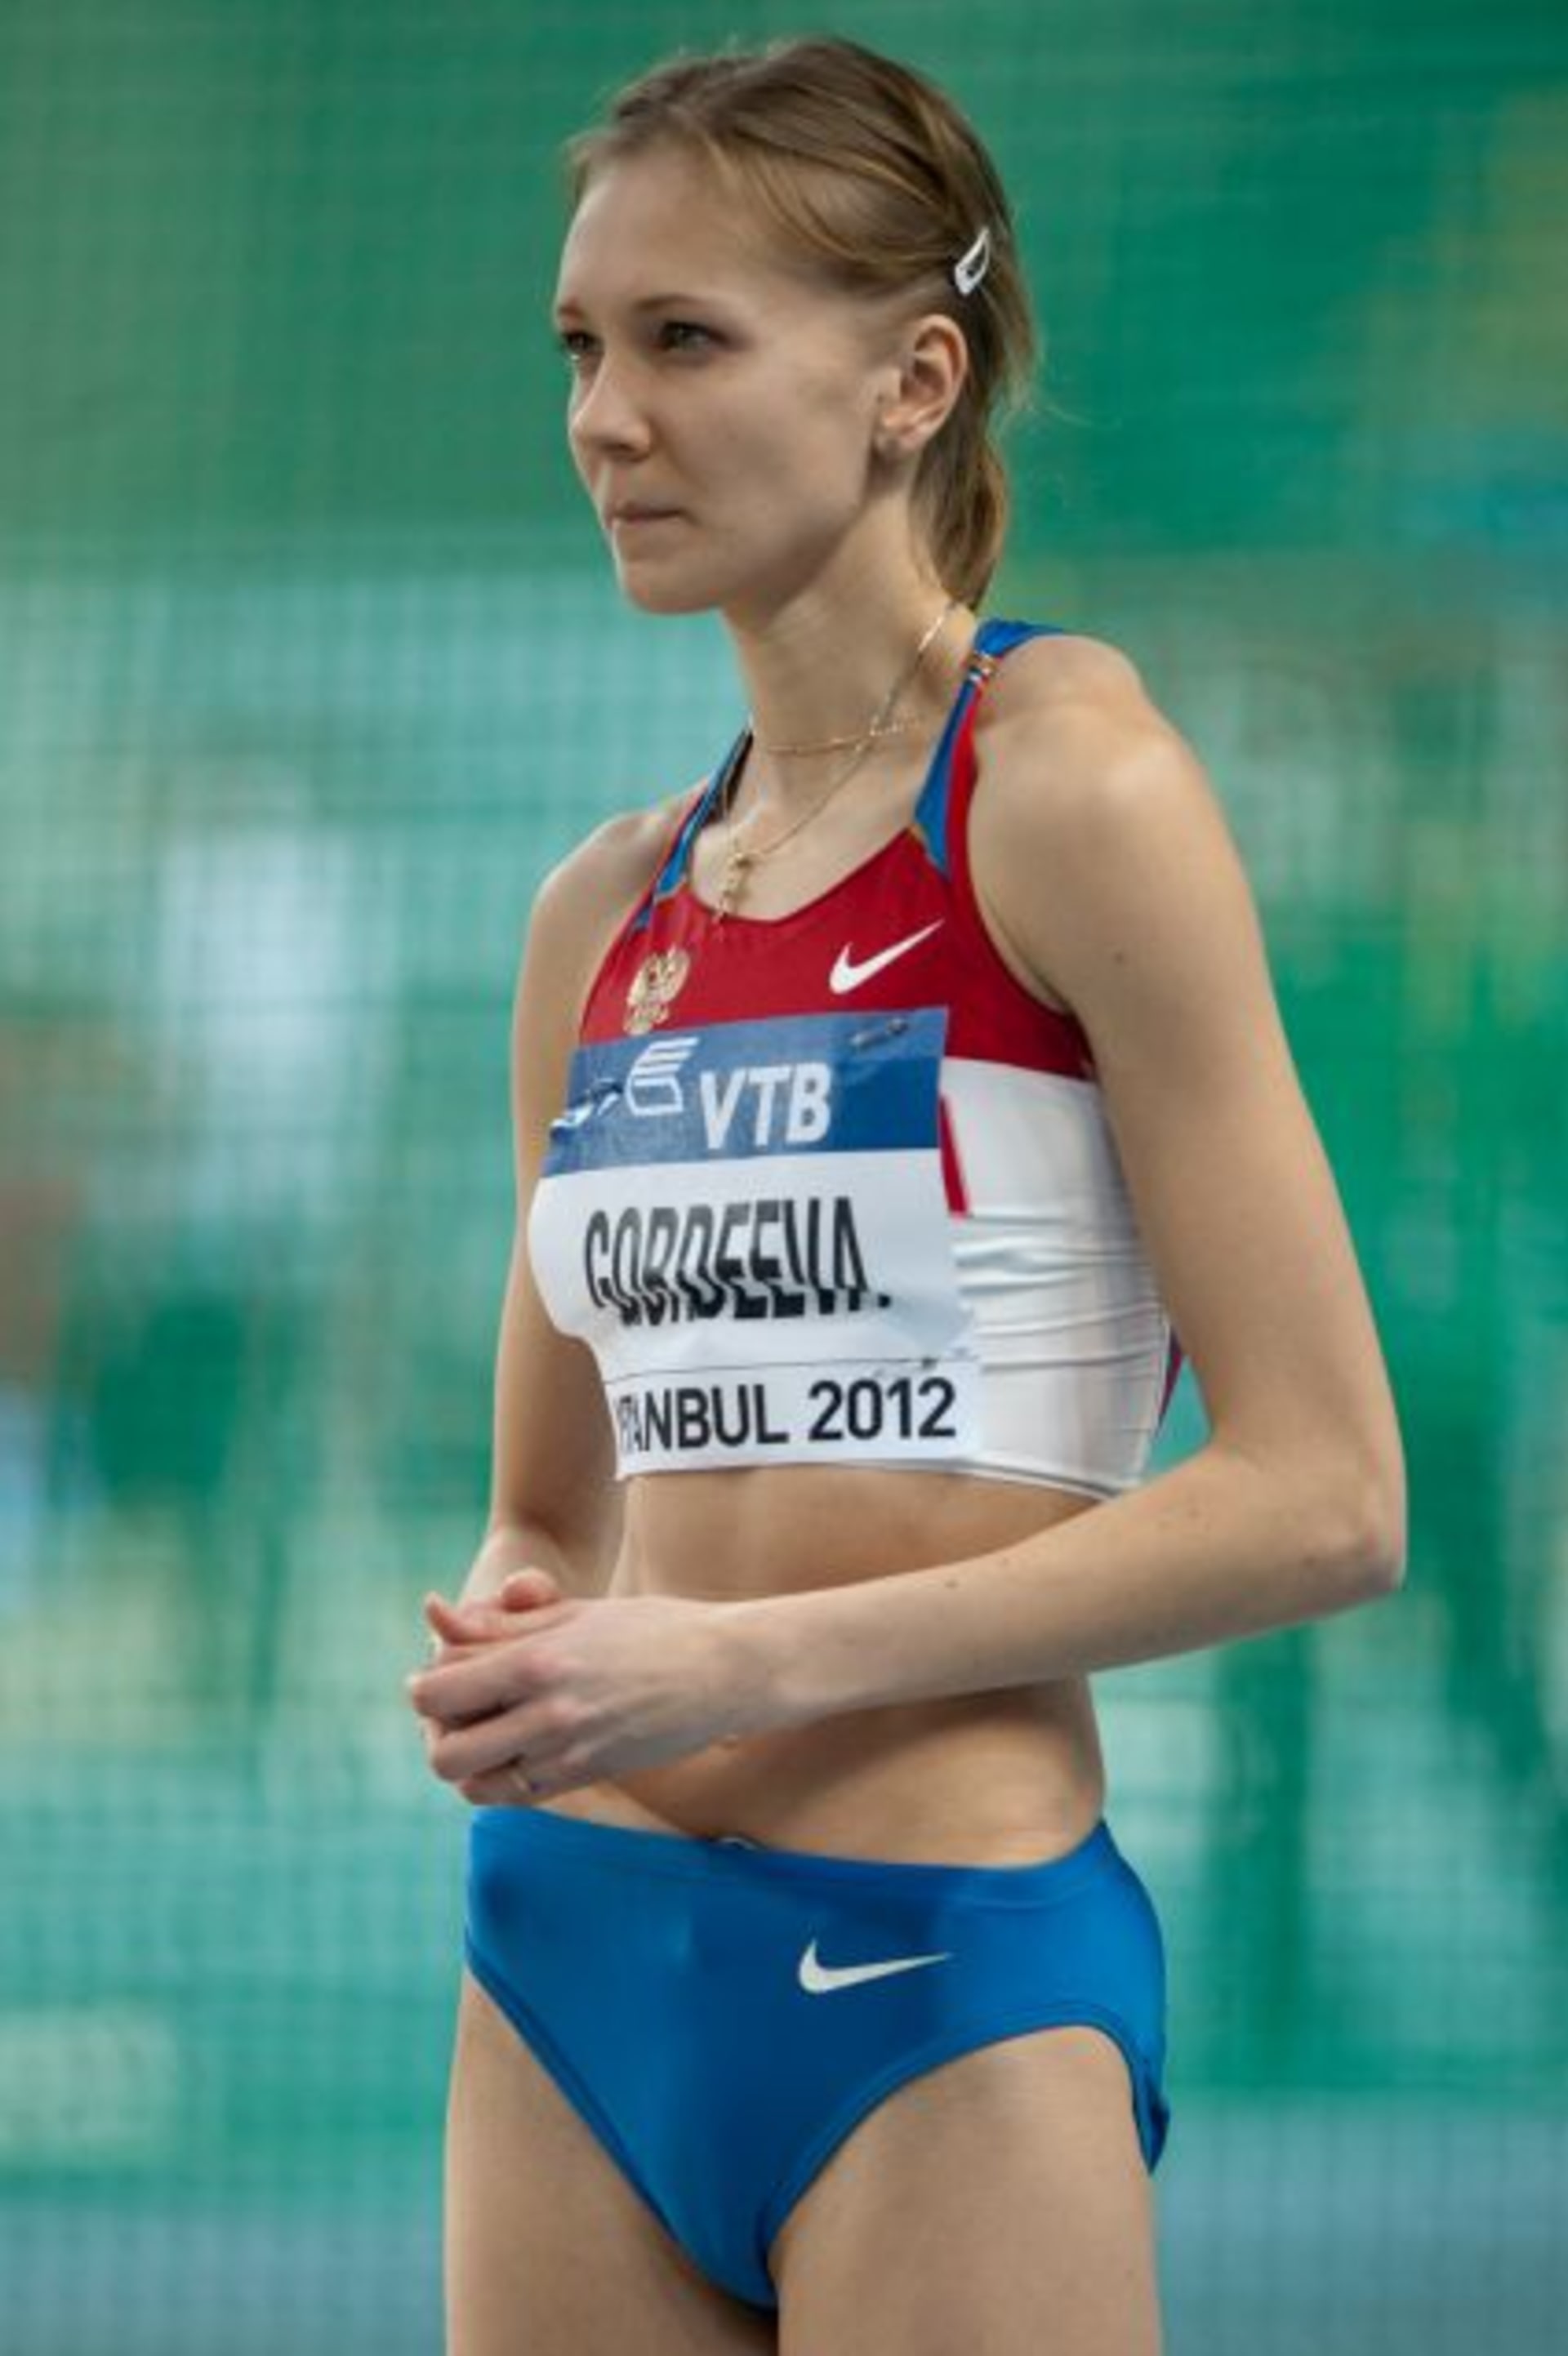 Irina Gordějevová (Profilová fotografie)